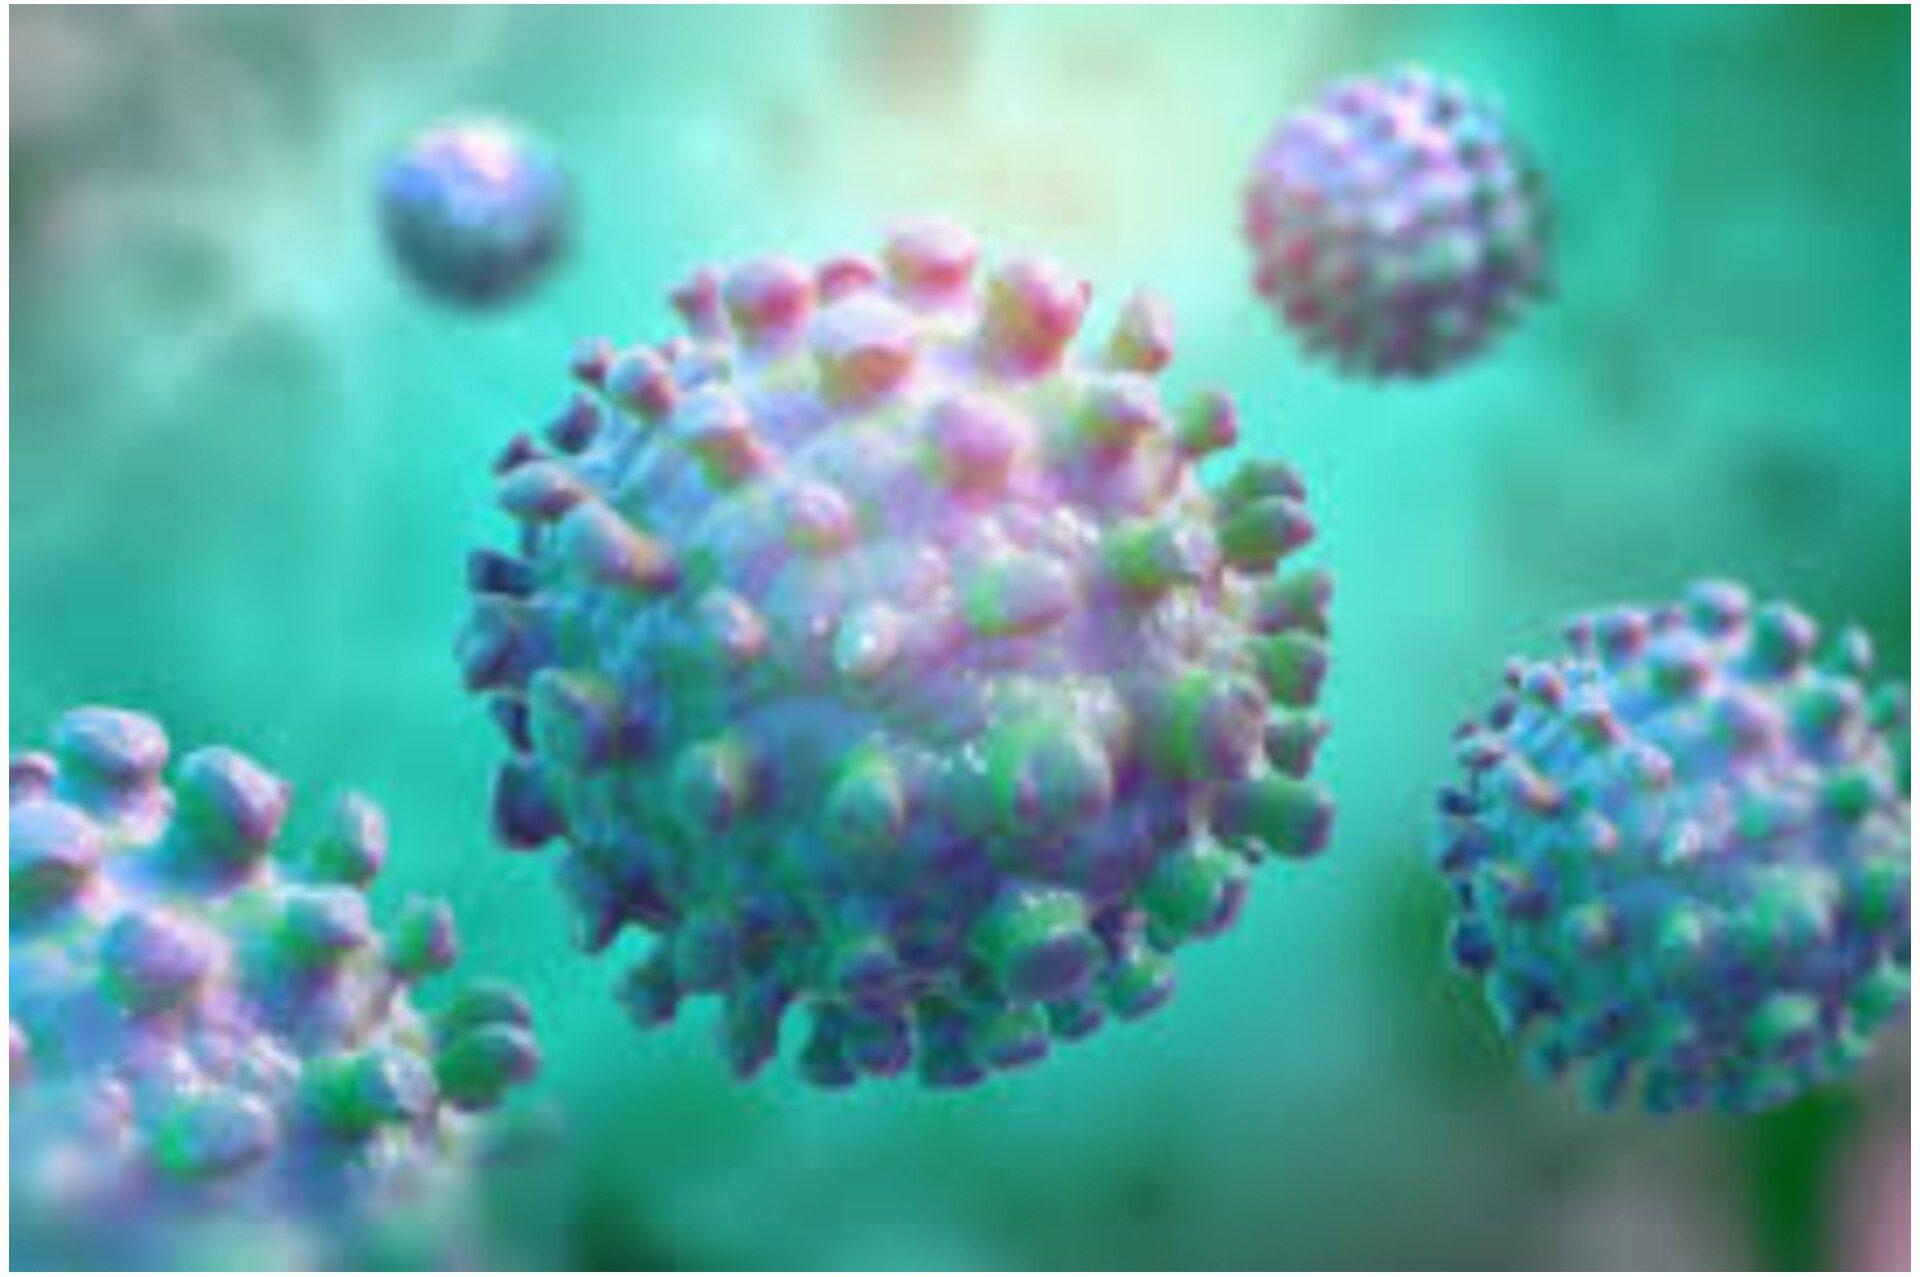 السلطات الأميركية تحذر من تفشي وباء يصعب اكتشافه “الفيروس الغامض”